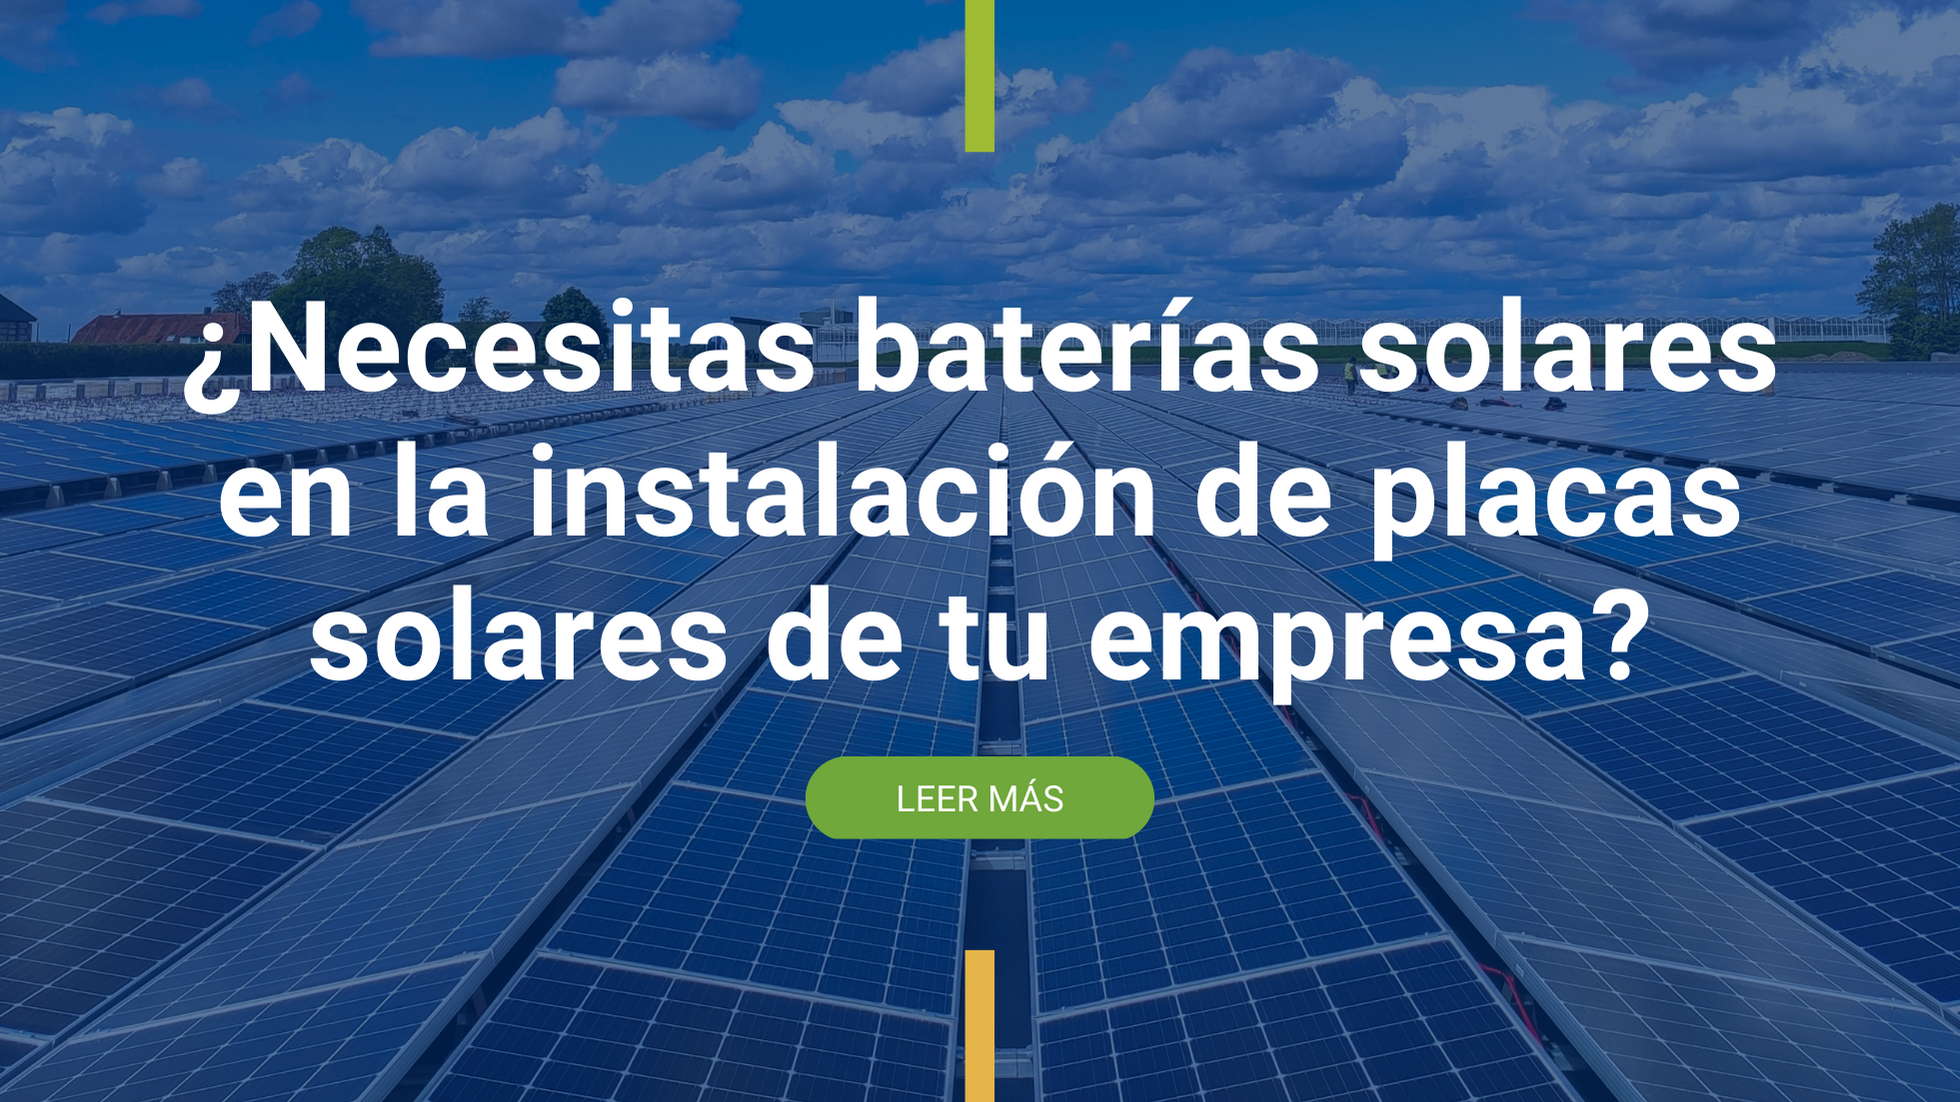 Necesitas baterias solares en la instalación de placas solares de tu empresa